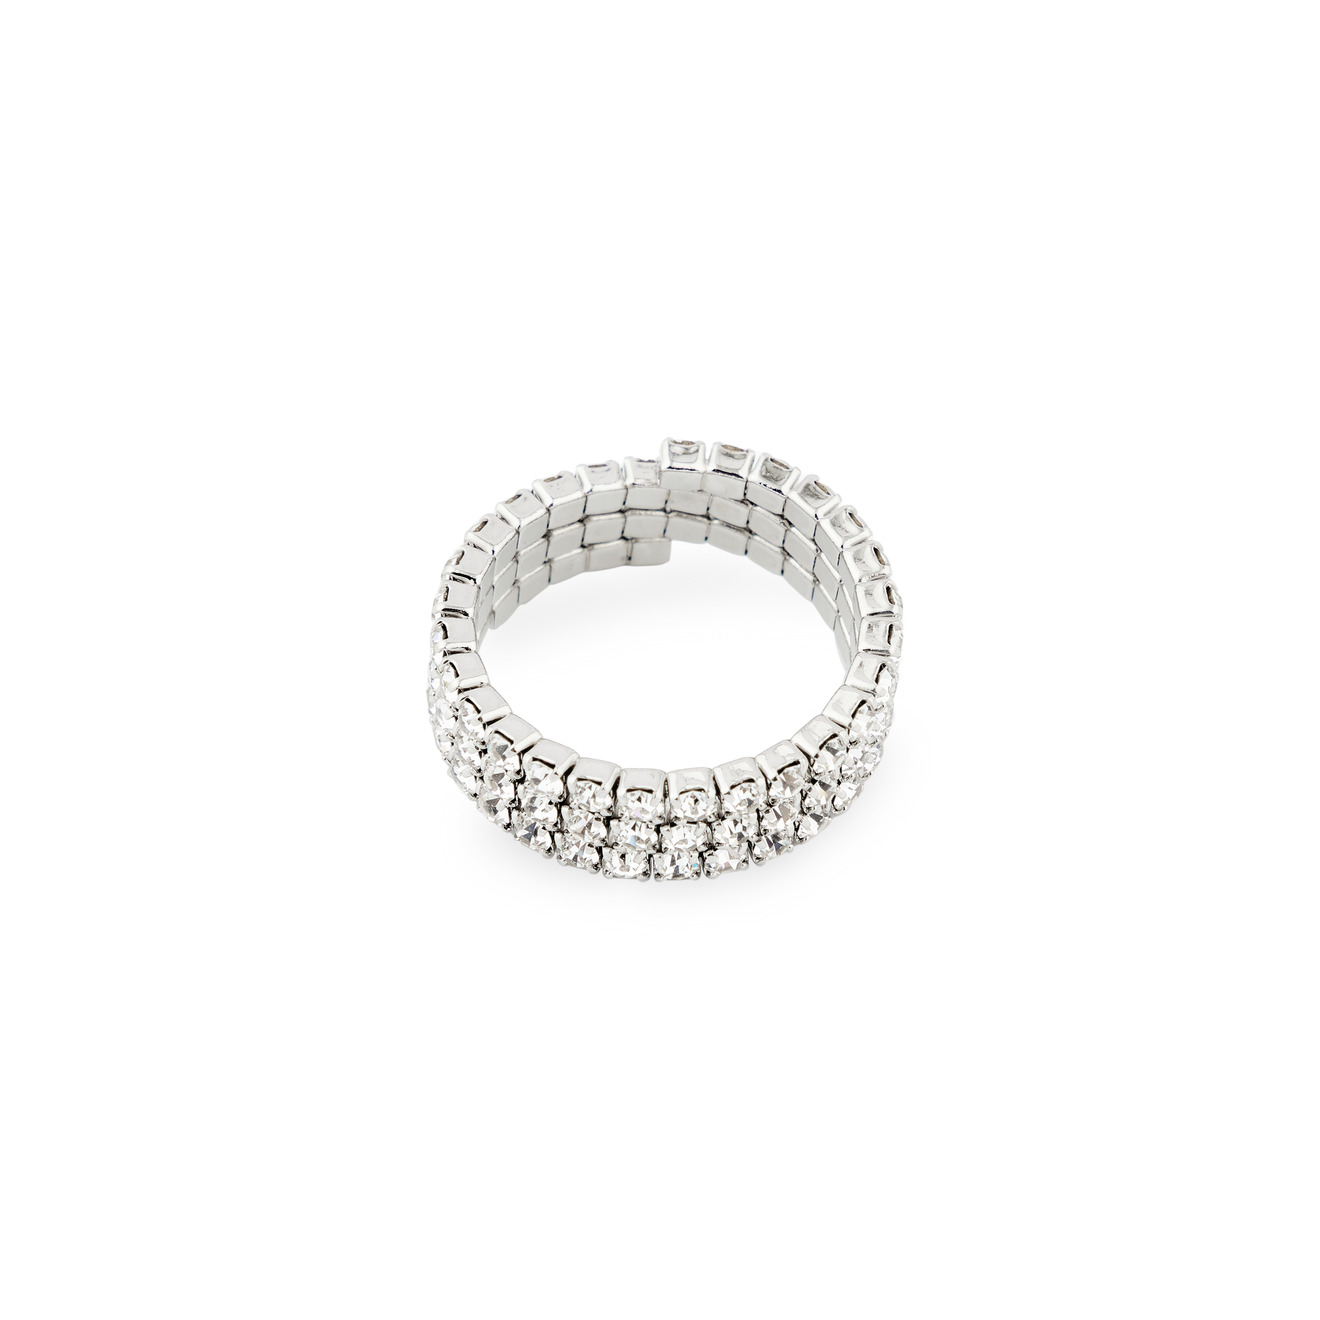 Herald Percy Серебристое кольцо из кристаллов herald percy серебристое кольцо из трех элементов с паве из зеленых и синих кристаллов